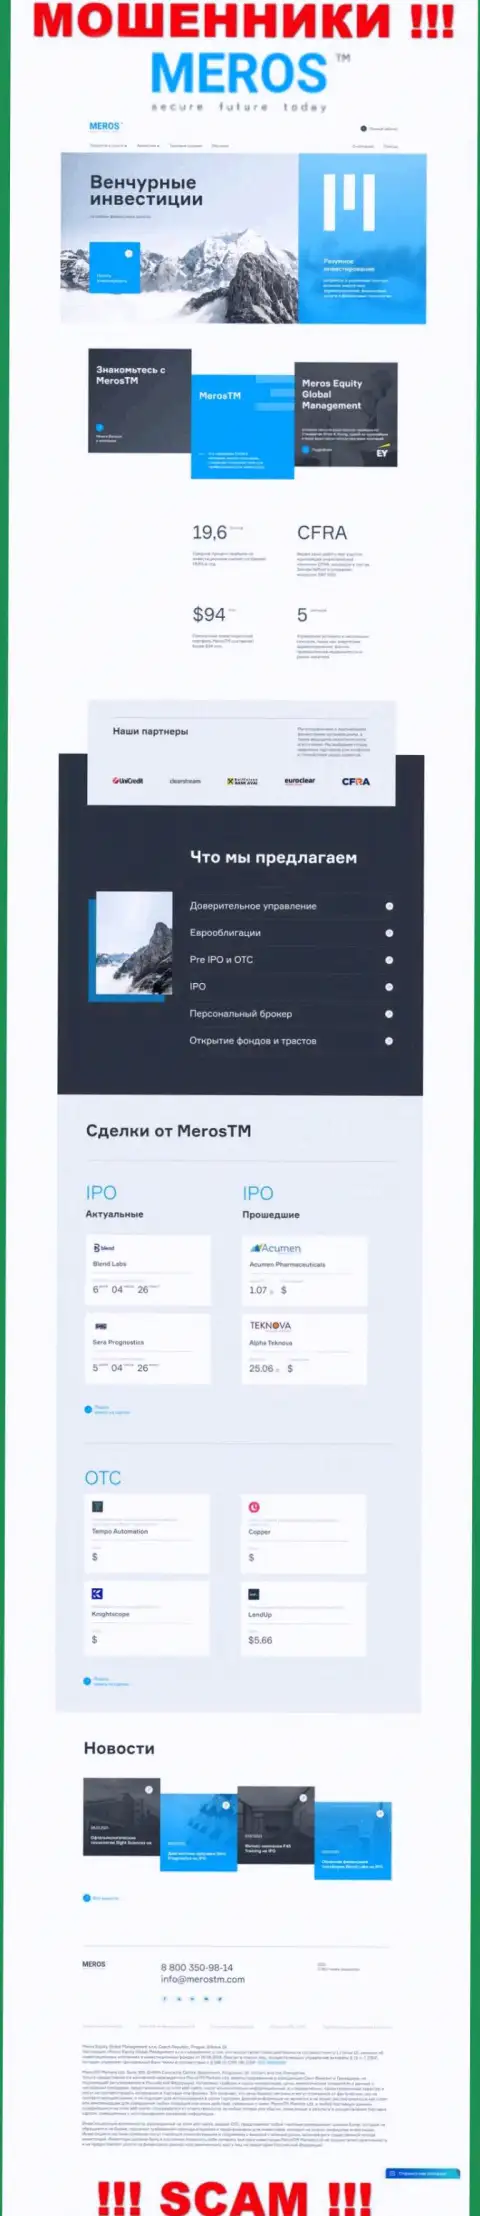 Обзор официального веб-портала мошенников MerosMT Markets LLC